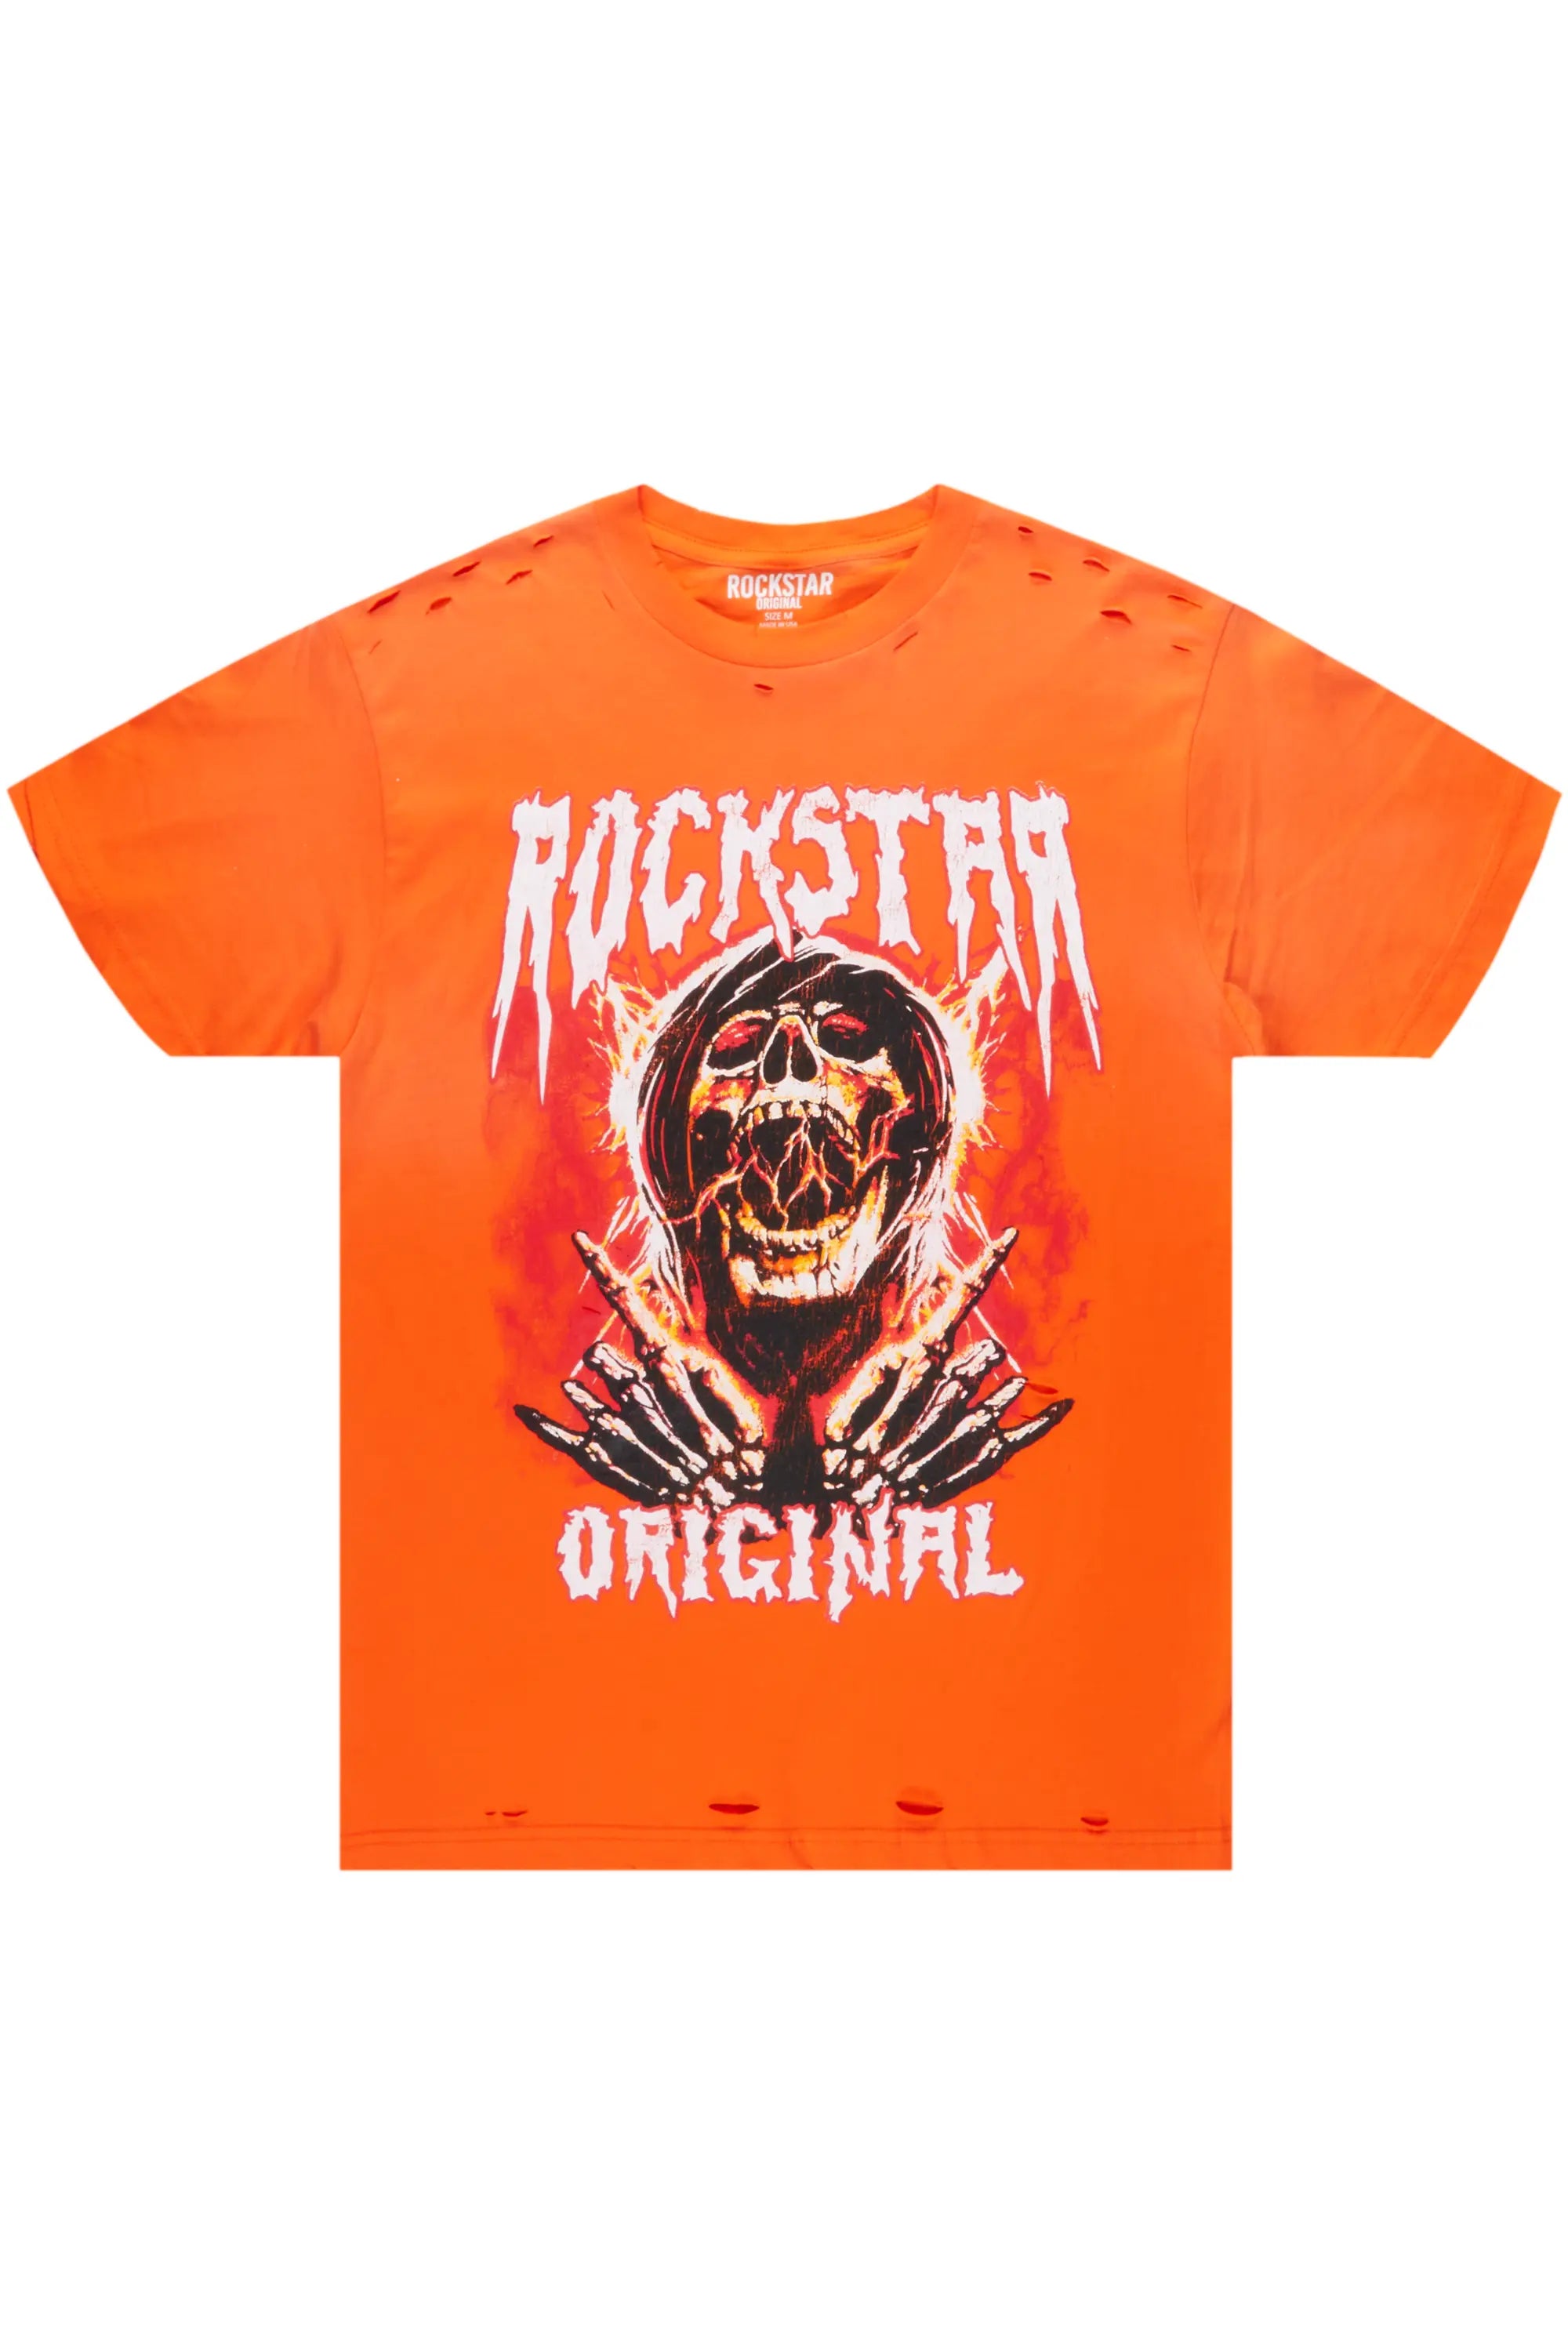 Stryker Orange Graphic T-Shirt